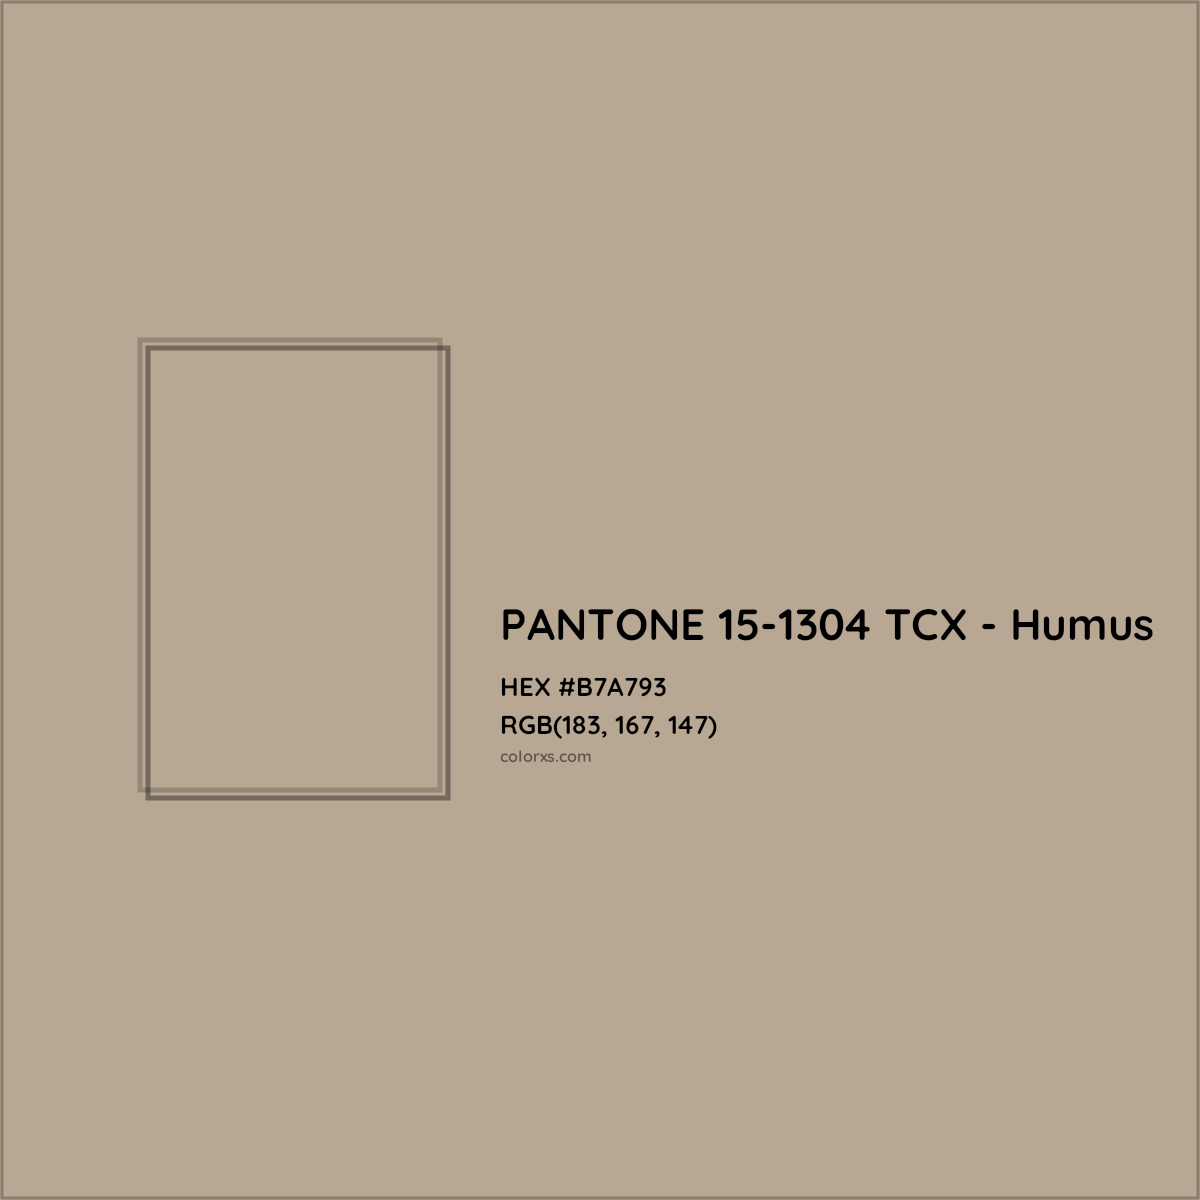 HEX #B7A793 PANTONE 15-1304 TCX - Humus CMS Pantone TCX - Color Code